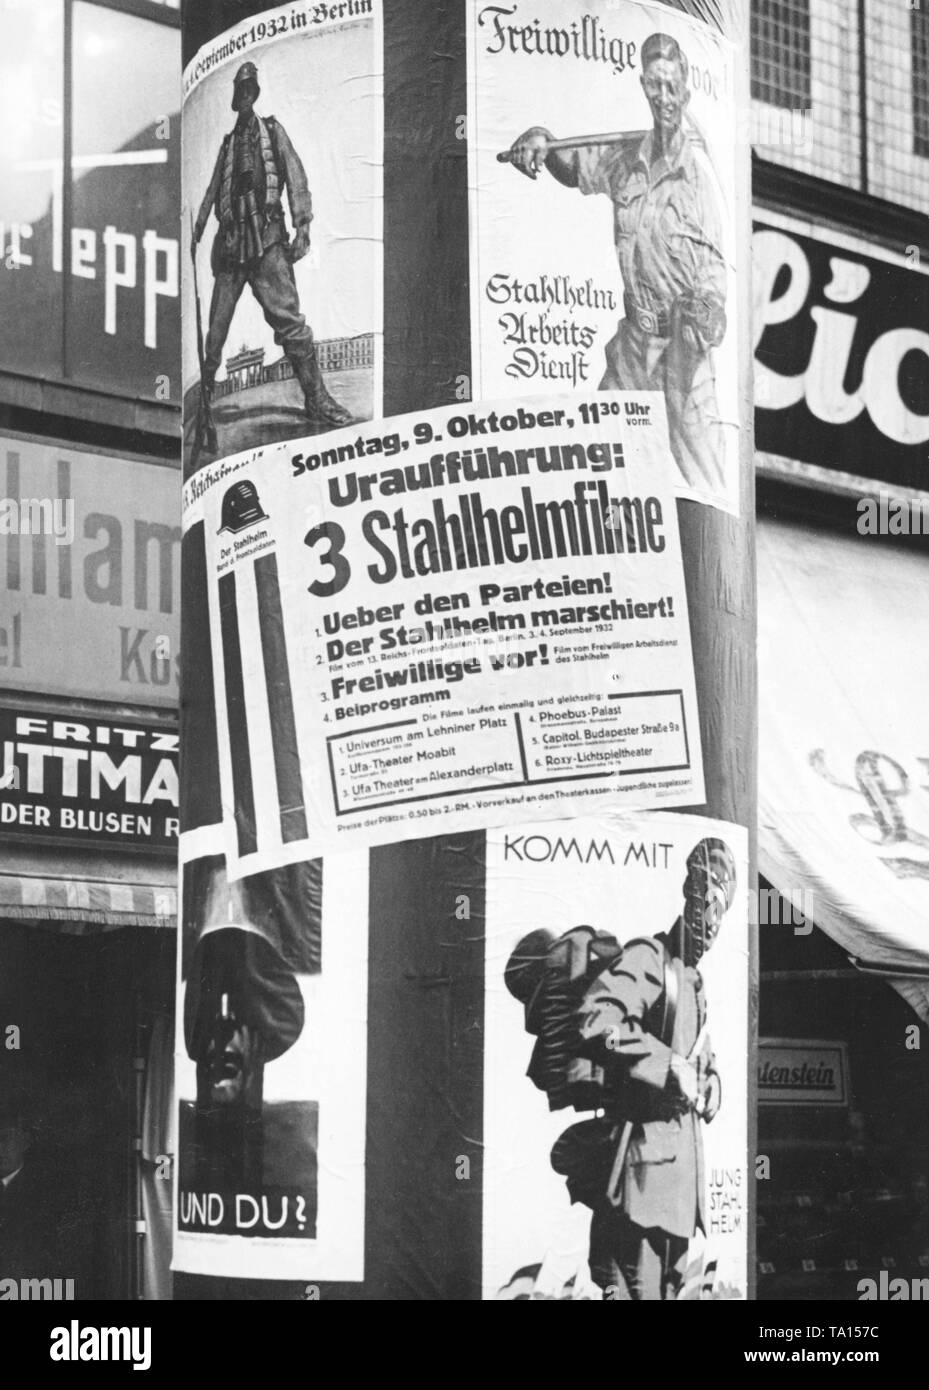 Sur une colonne, à Berlin, le Stahlhelm annonce la première de trois films auto-produit avec les titres "Ueber den Parteien', 'Stahlhelm marschiert" et "Freiwillige vor'. Vous trouverez ci-dessous les salles dans lesquelles les films sont projetés. Banque D'Images